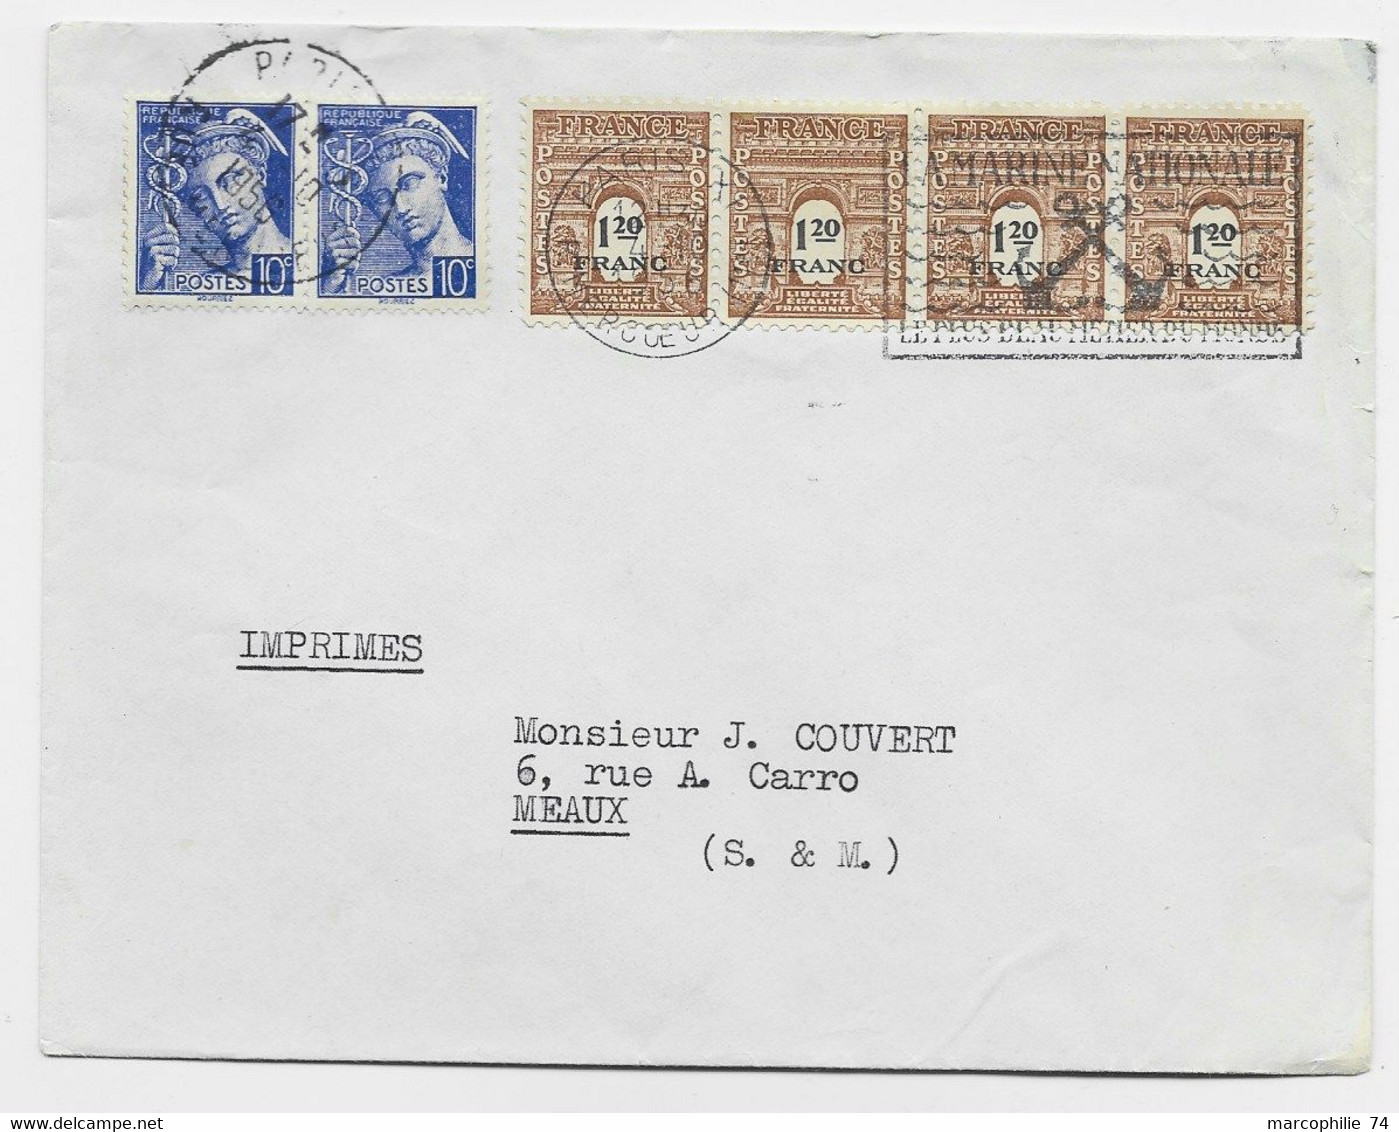 FRANCE ARC TRIOMPHE 1FR20 BANDE DE 4+ 10C MERCURE PAIRE LETTRE PARIS 1956 USAGE TARDIF AU TARIF - 1944-45 Arc De Triomphe